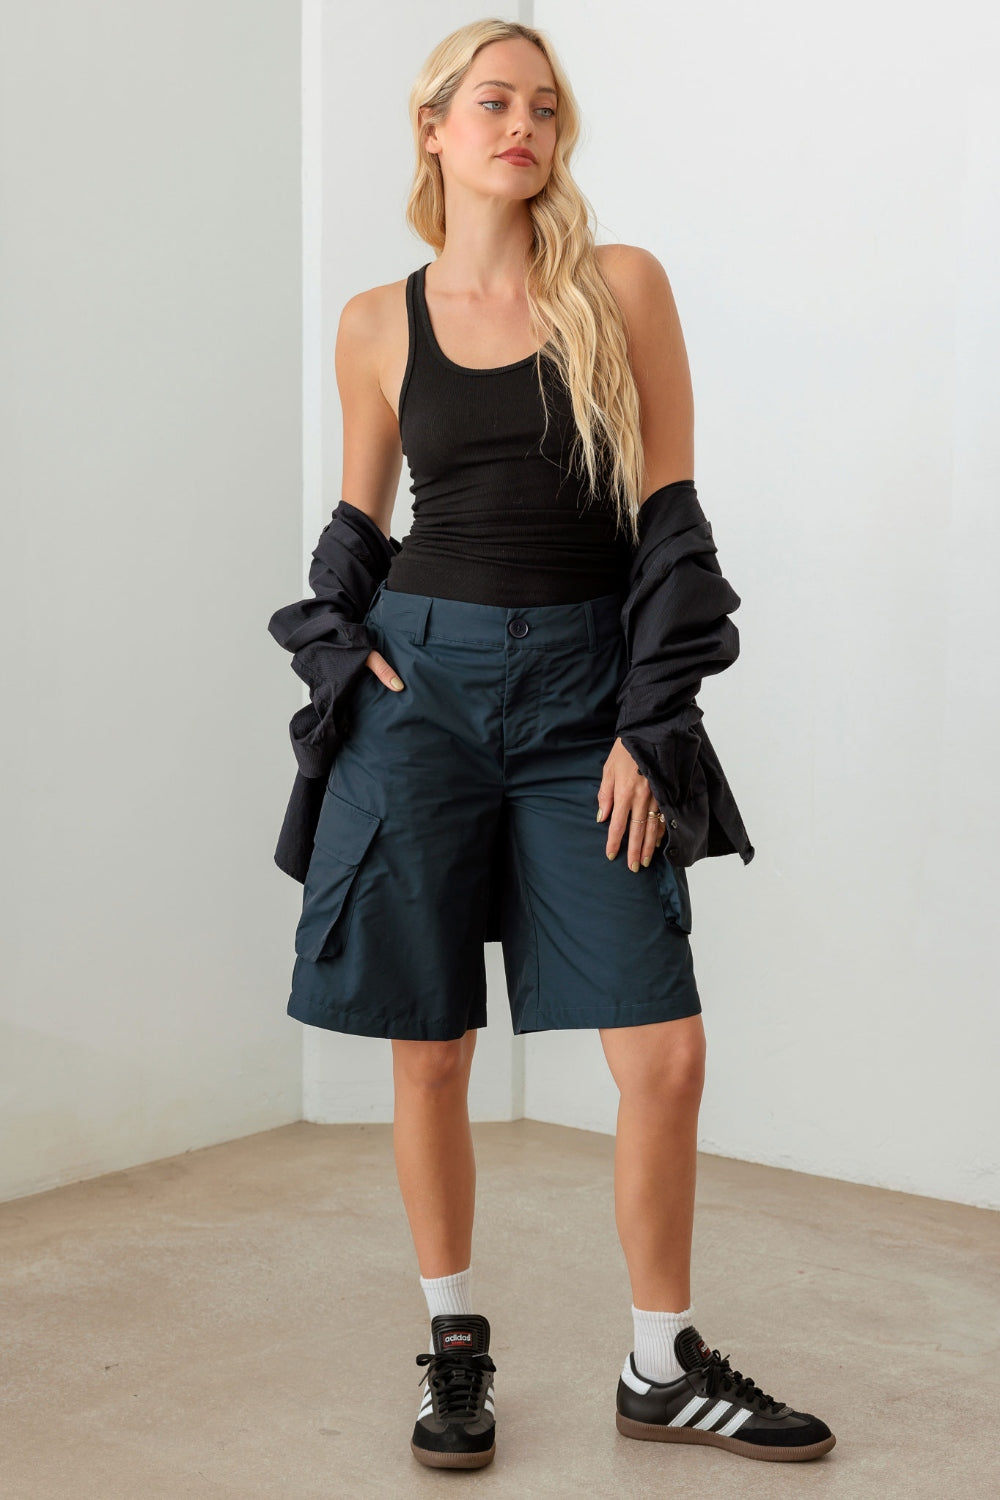 Tasha Apparel Navy Cargo Bermuda Shorts - Tigbuls Variety Fashion